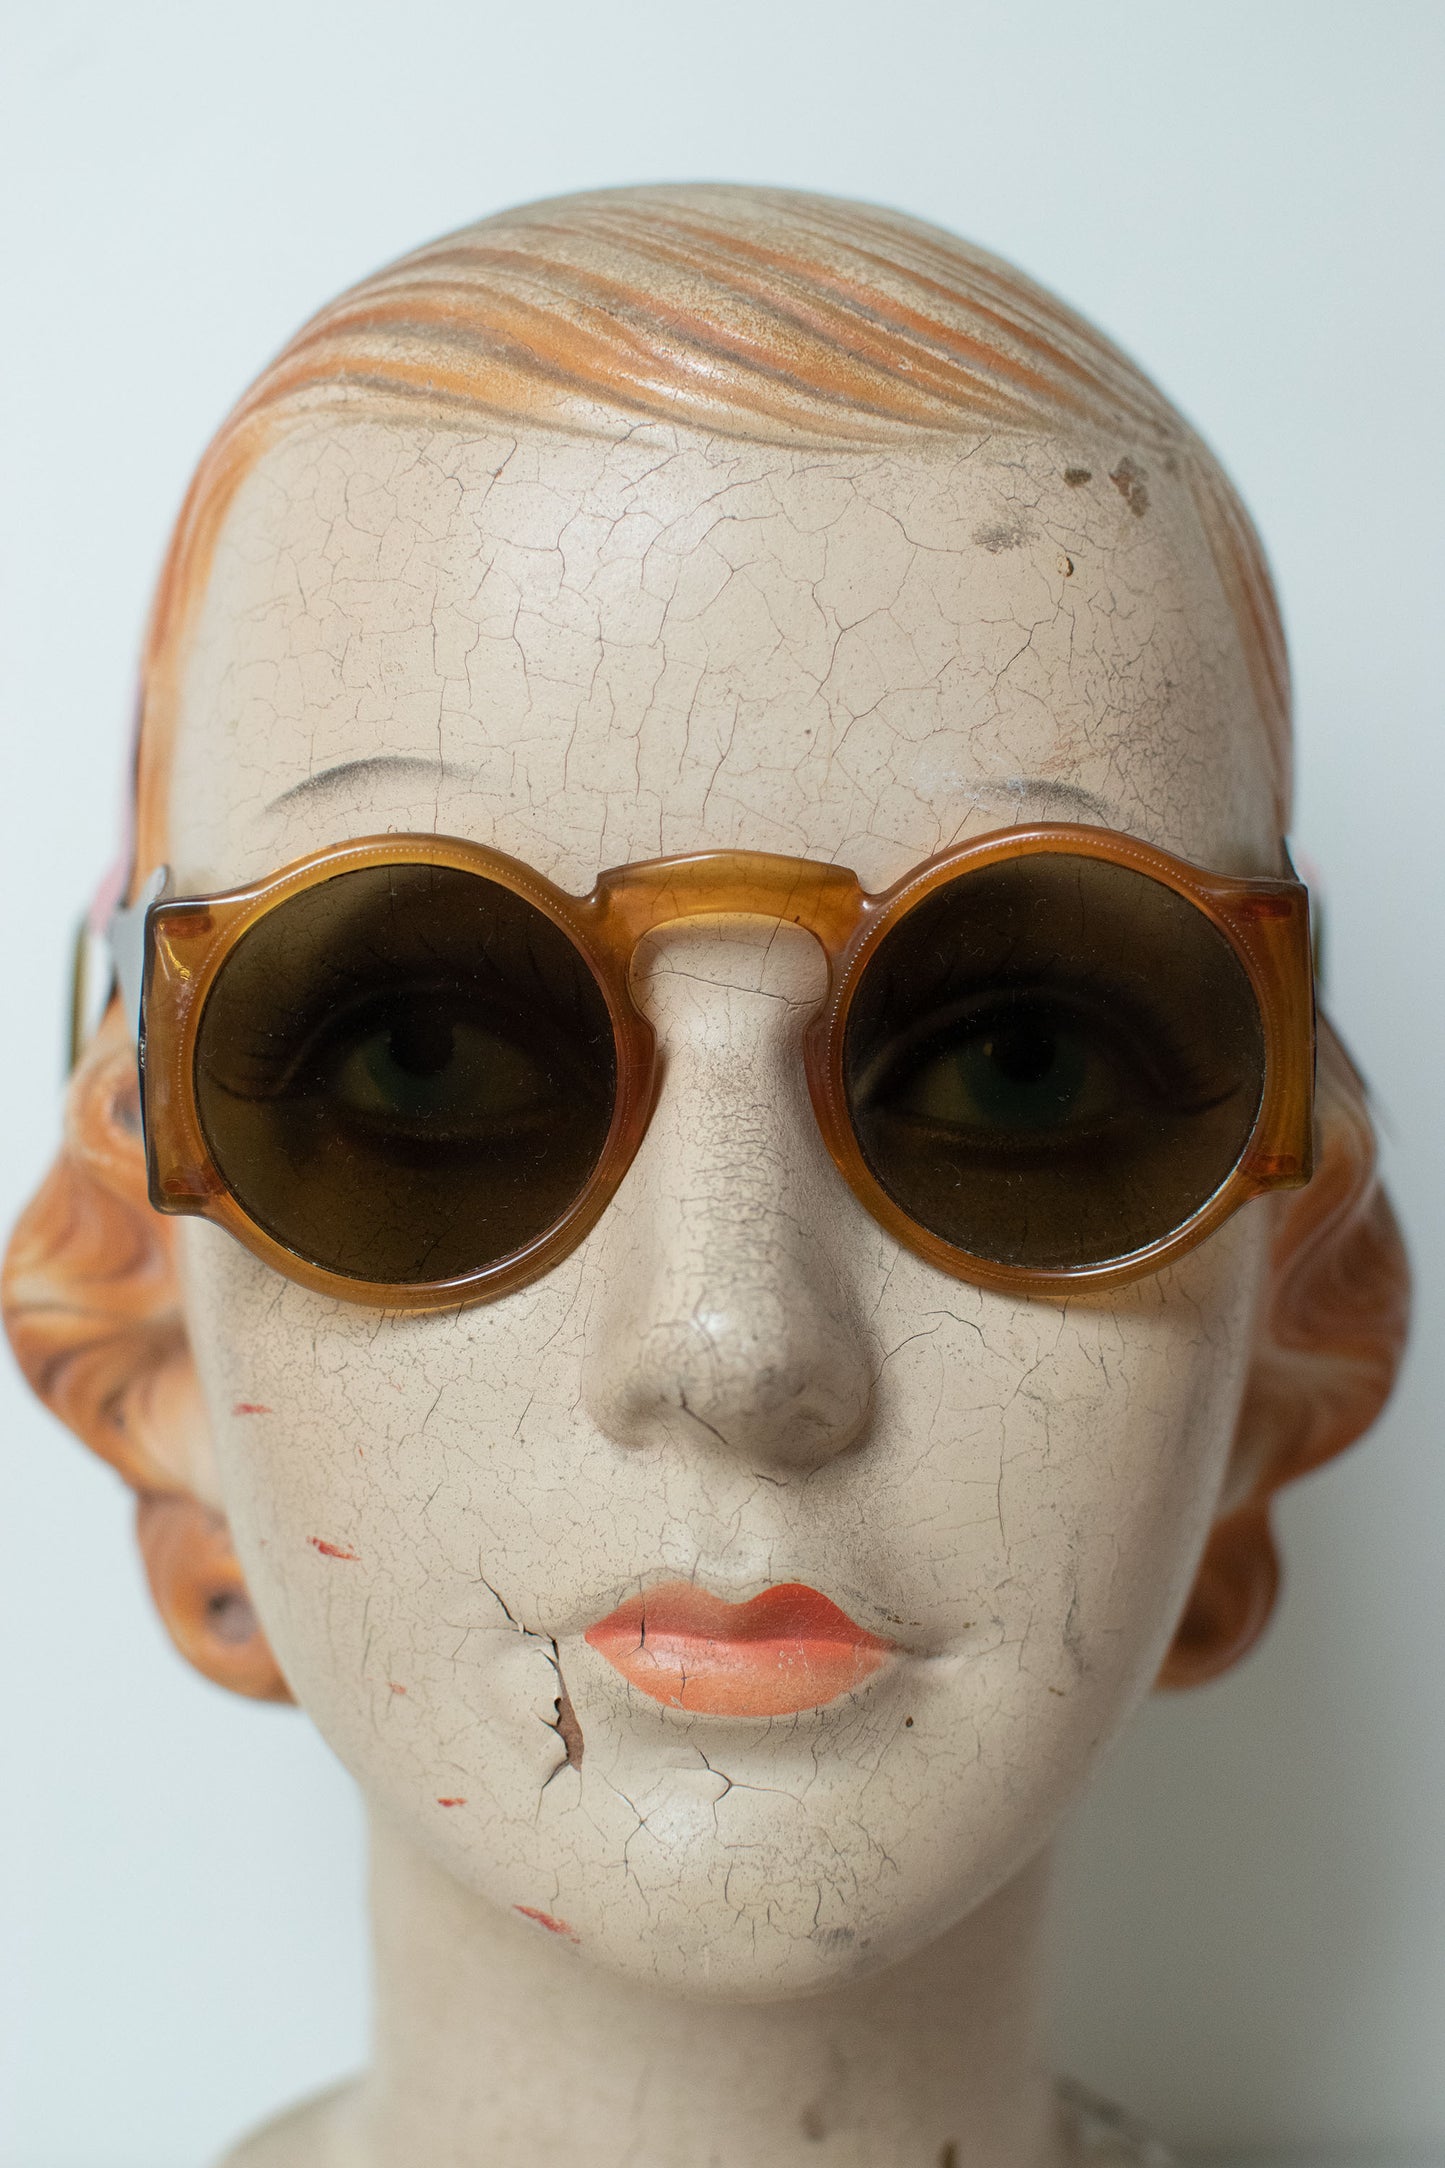 1940s Blinkers Sunglasses